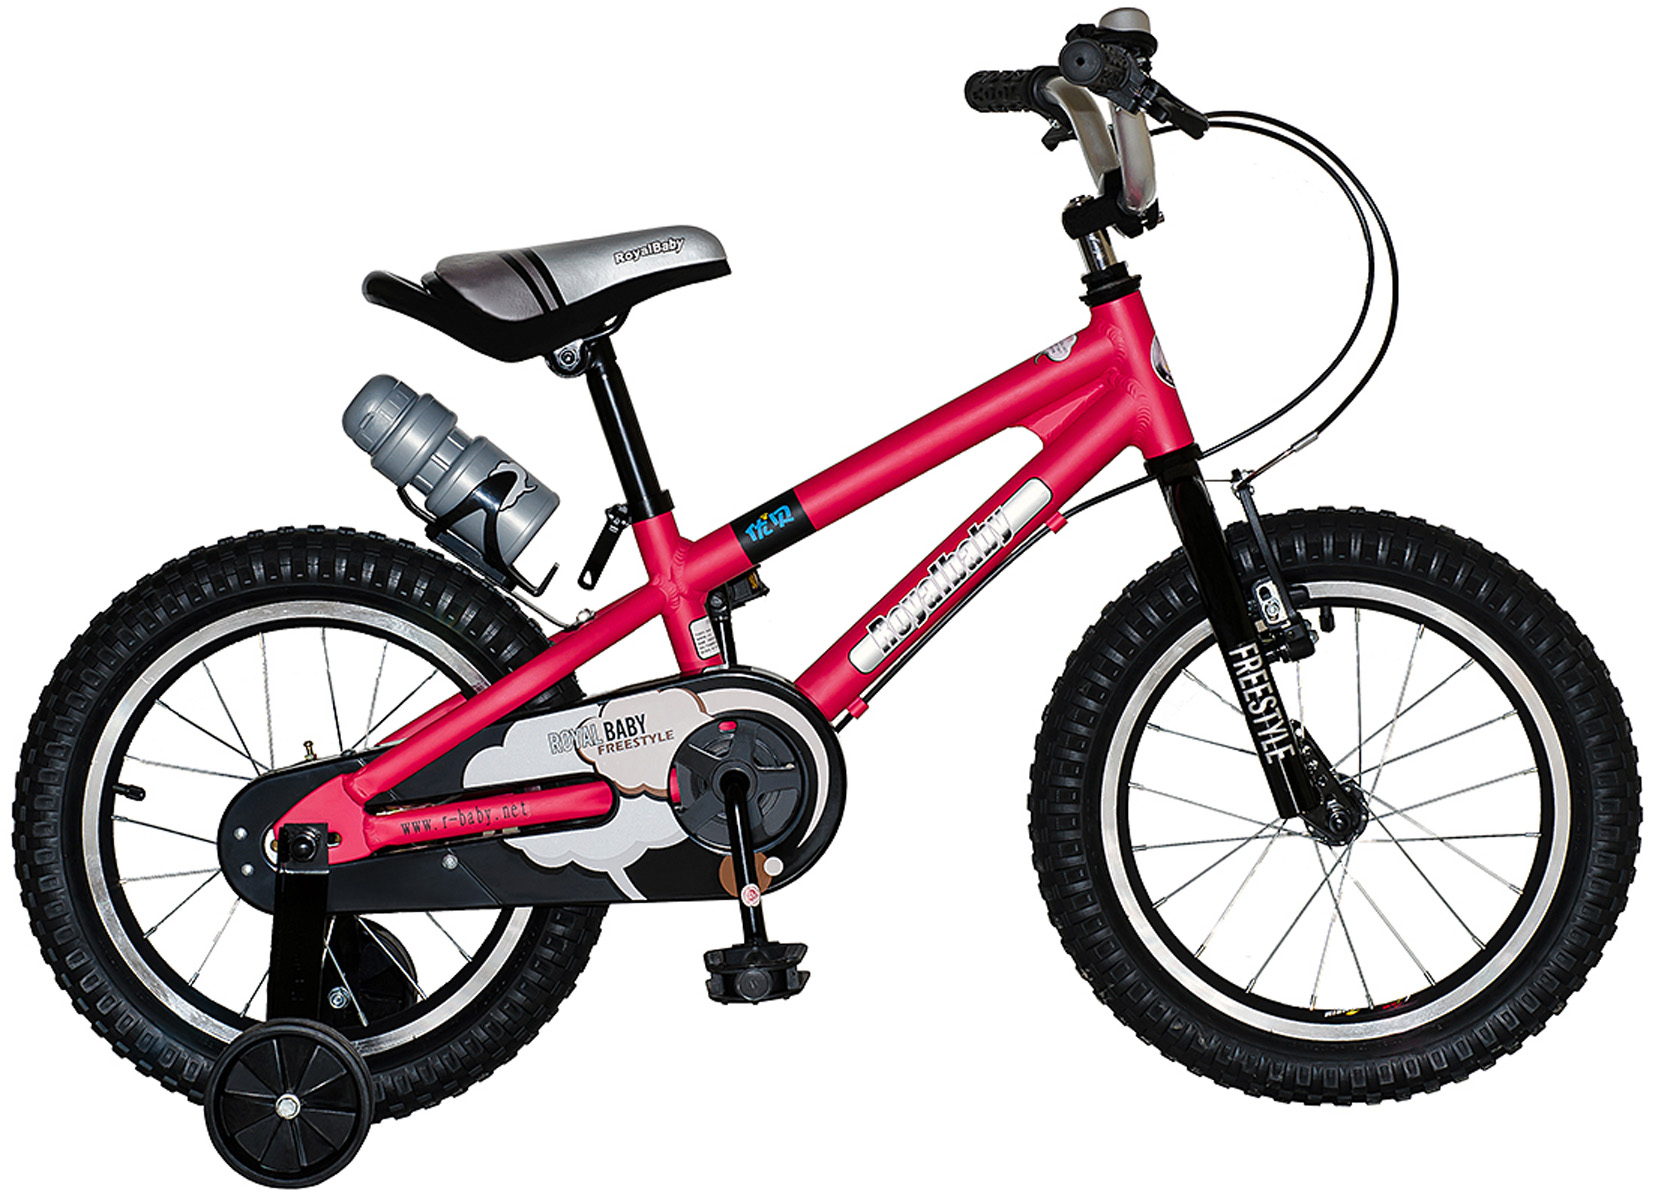  Отзывы о Детском велосипеде Royal Baby Freestyle 16 Alloy (2020) 2020